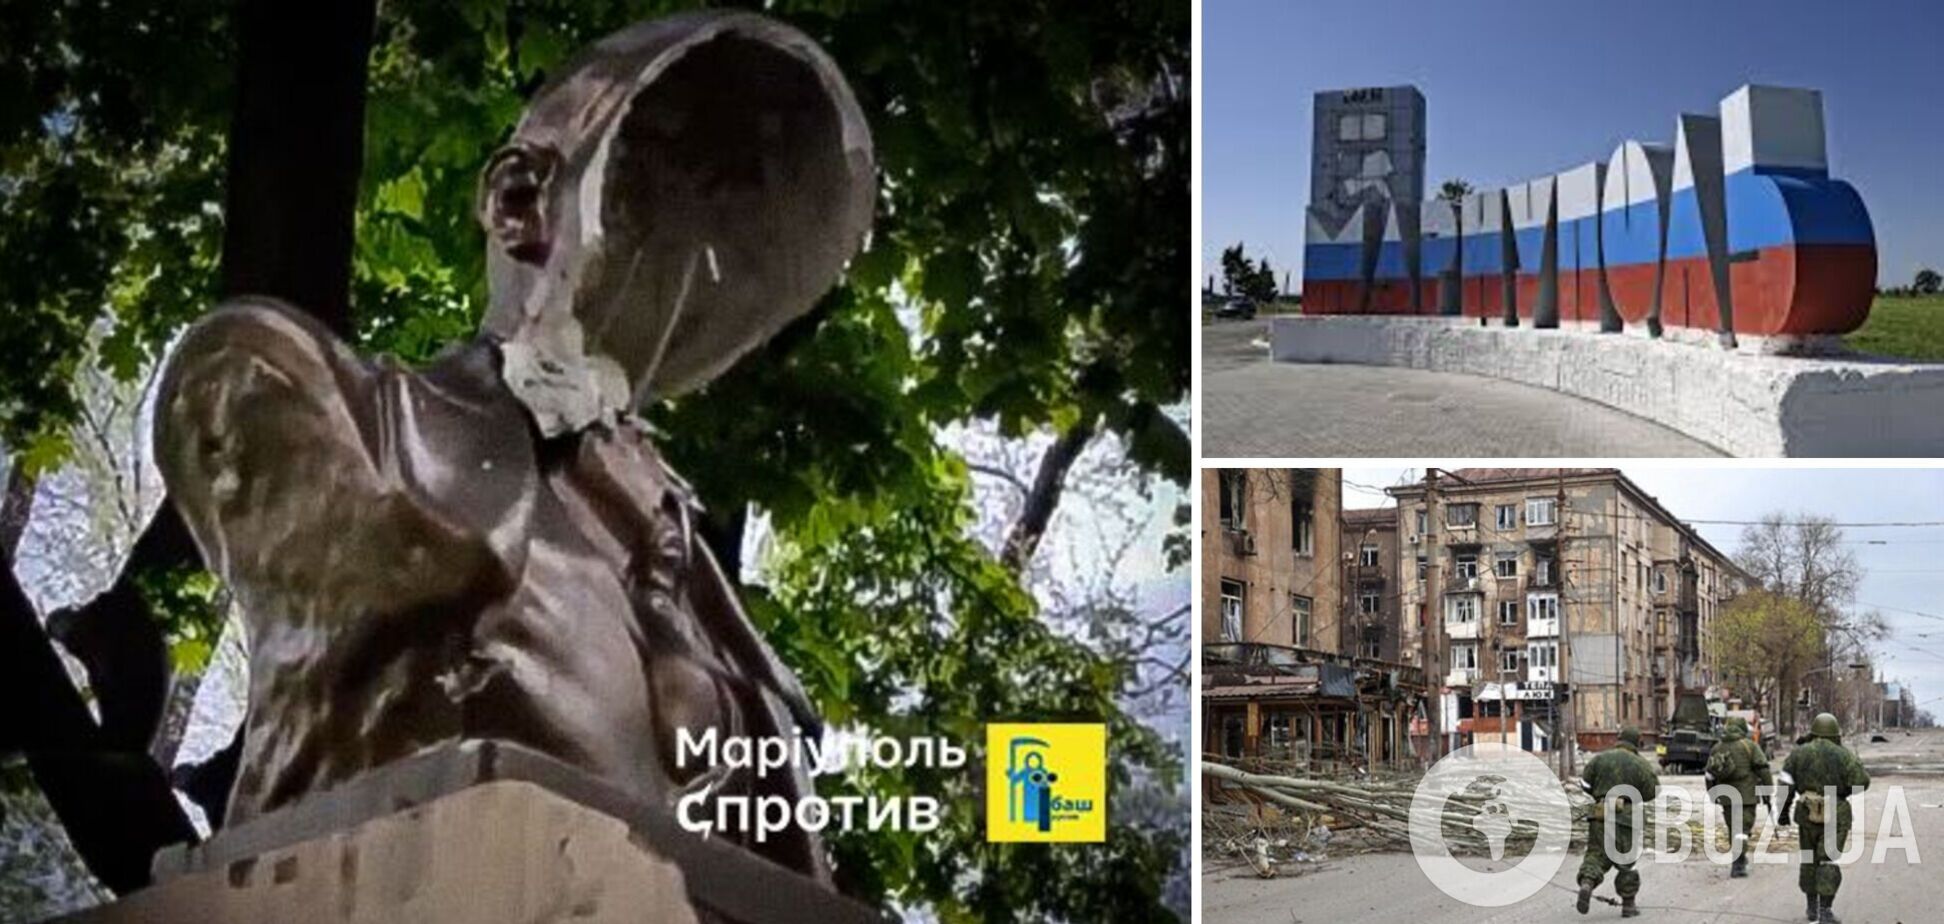 Декоммунизация продолжается: в оккупированном Мариуполе неизвестные уничтожили монумент Ленину. Фото и видео